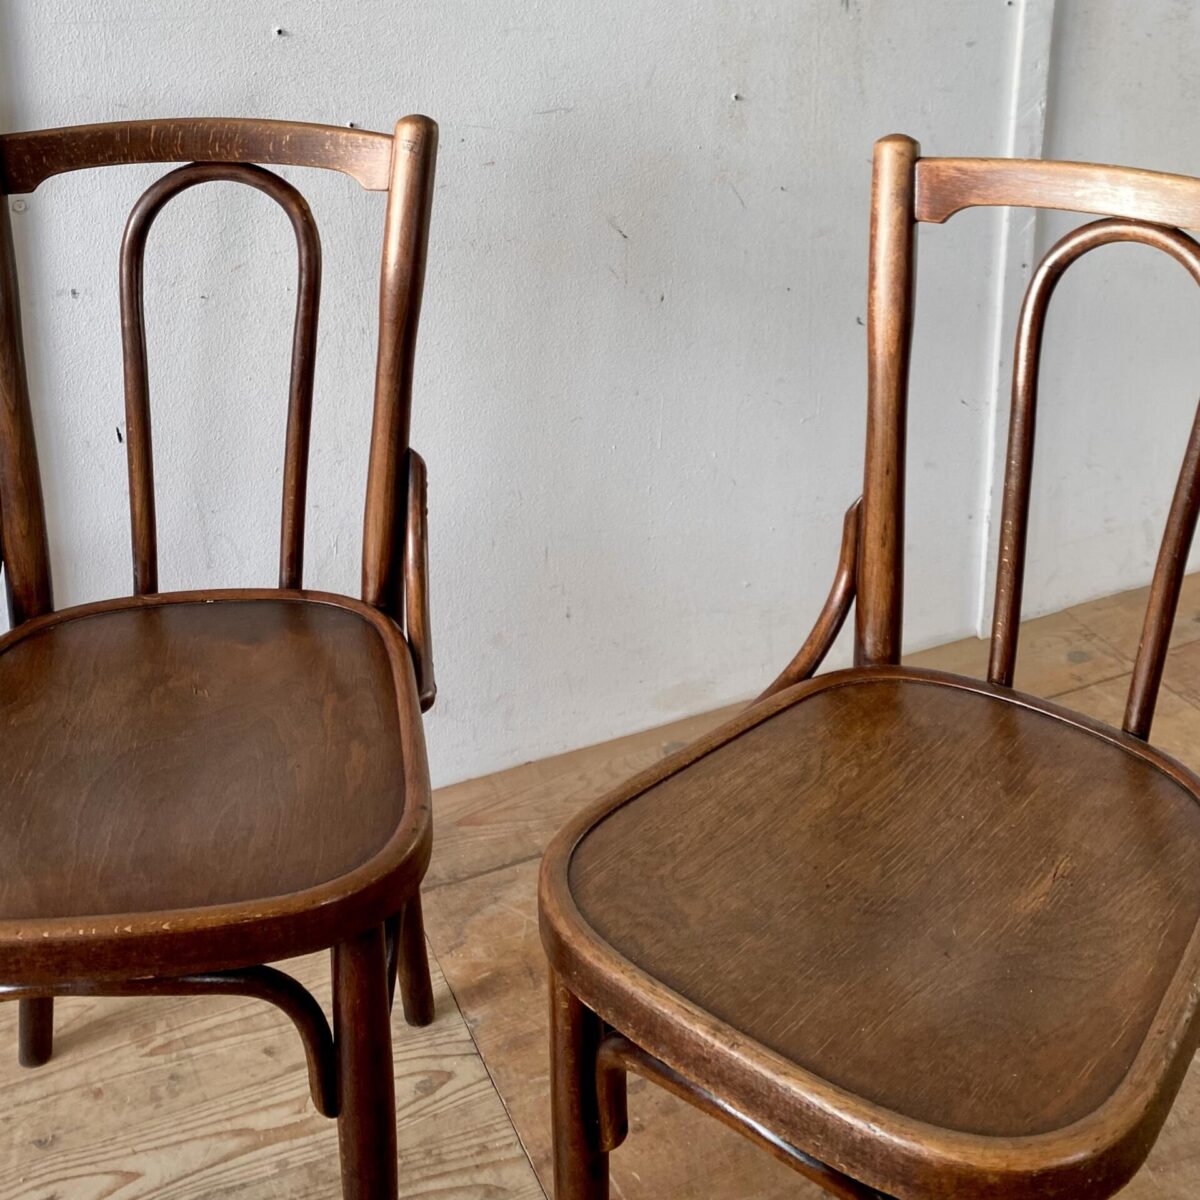 Deuxieme.shop swissdesign 4er Set Bistrostühle von Horgenglarus. Preis fürs Set. Die Stühle sind in stabilem restaurierten Zustand. Dunkle Kastanienbraune Ausstrahlung mit etwas Alterspatina. 